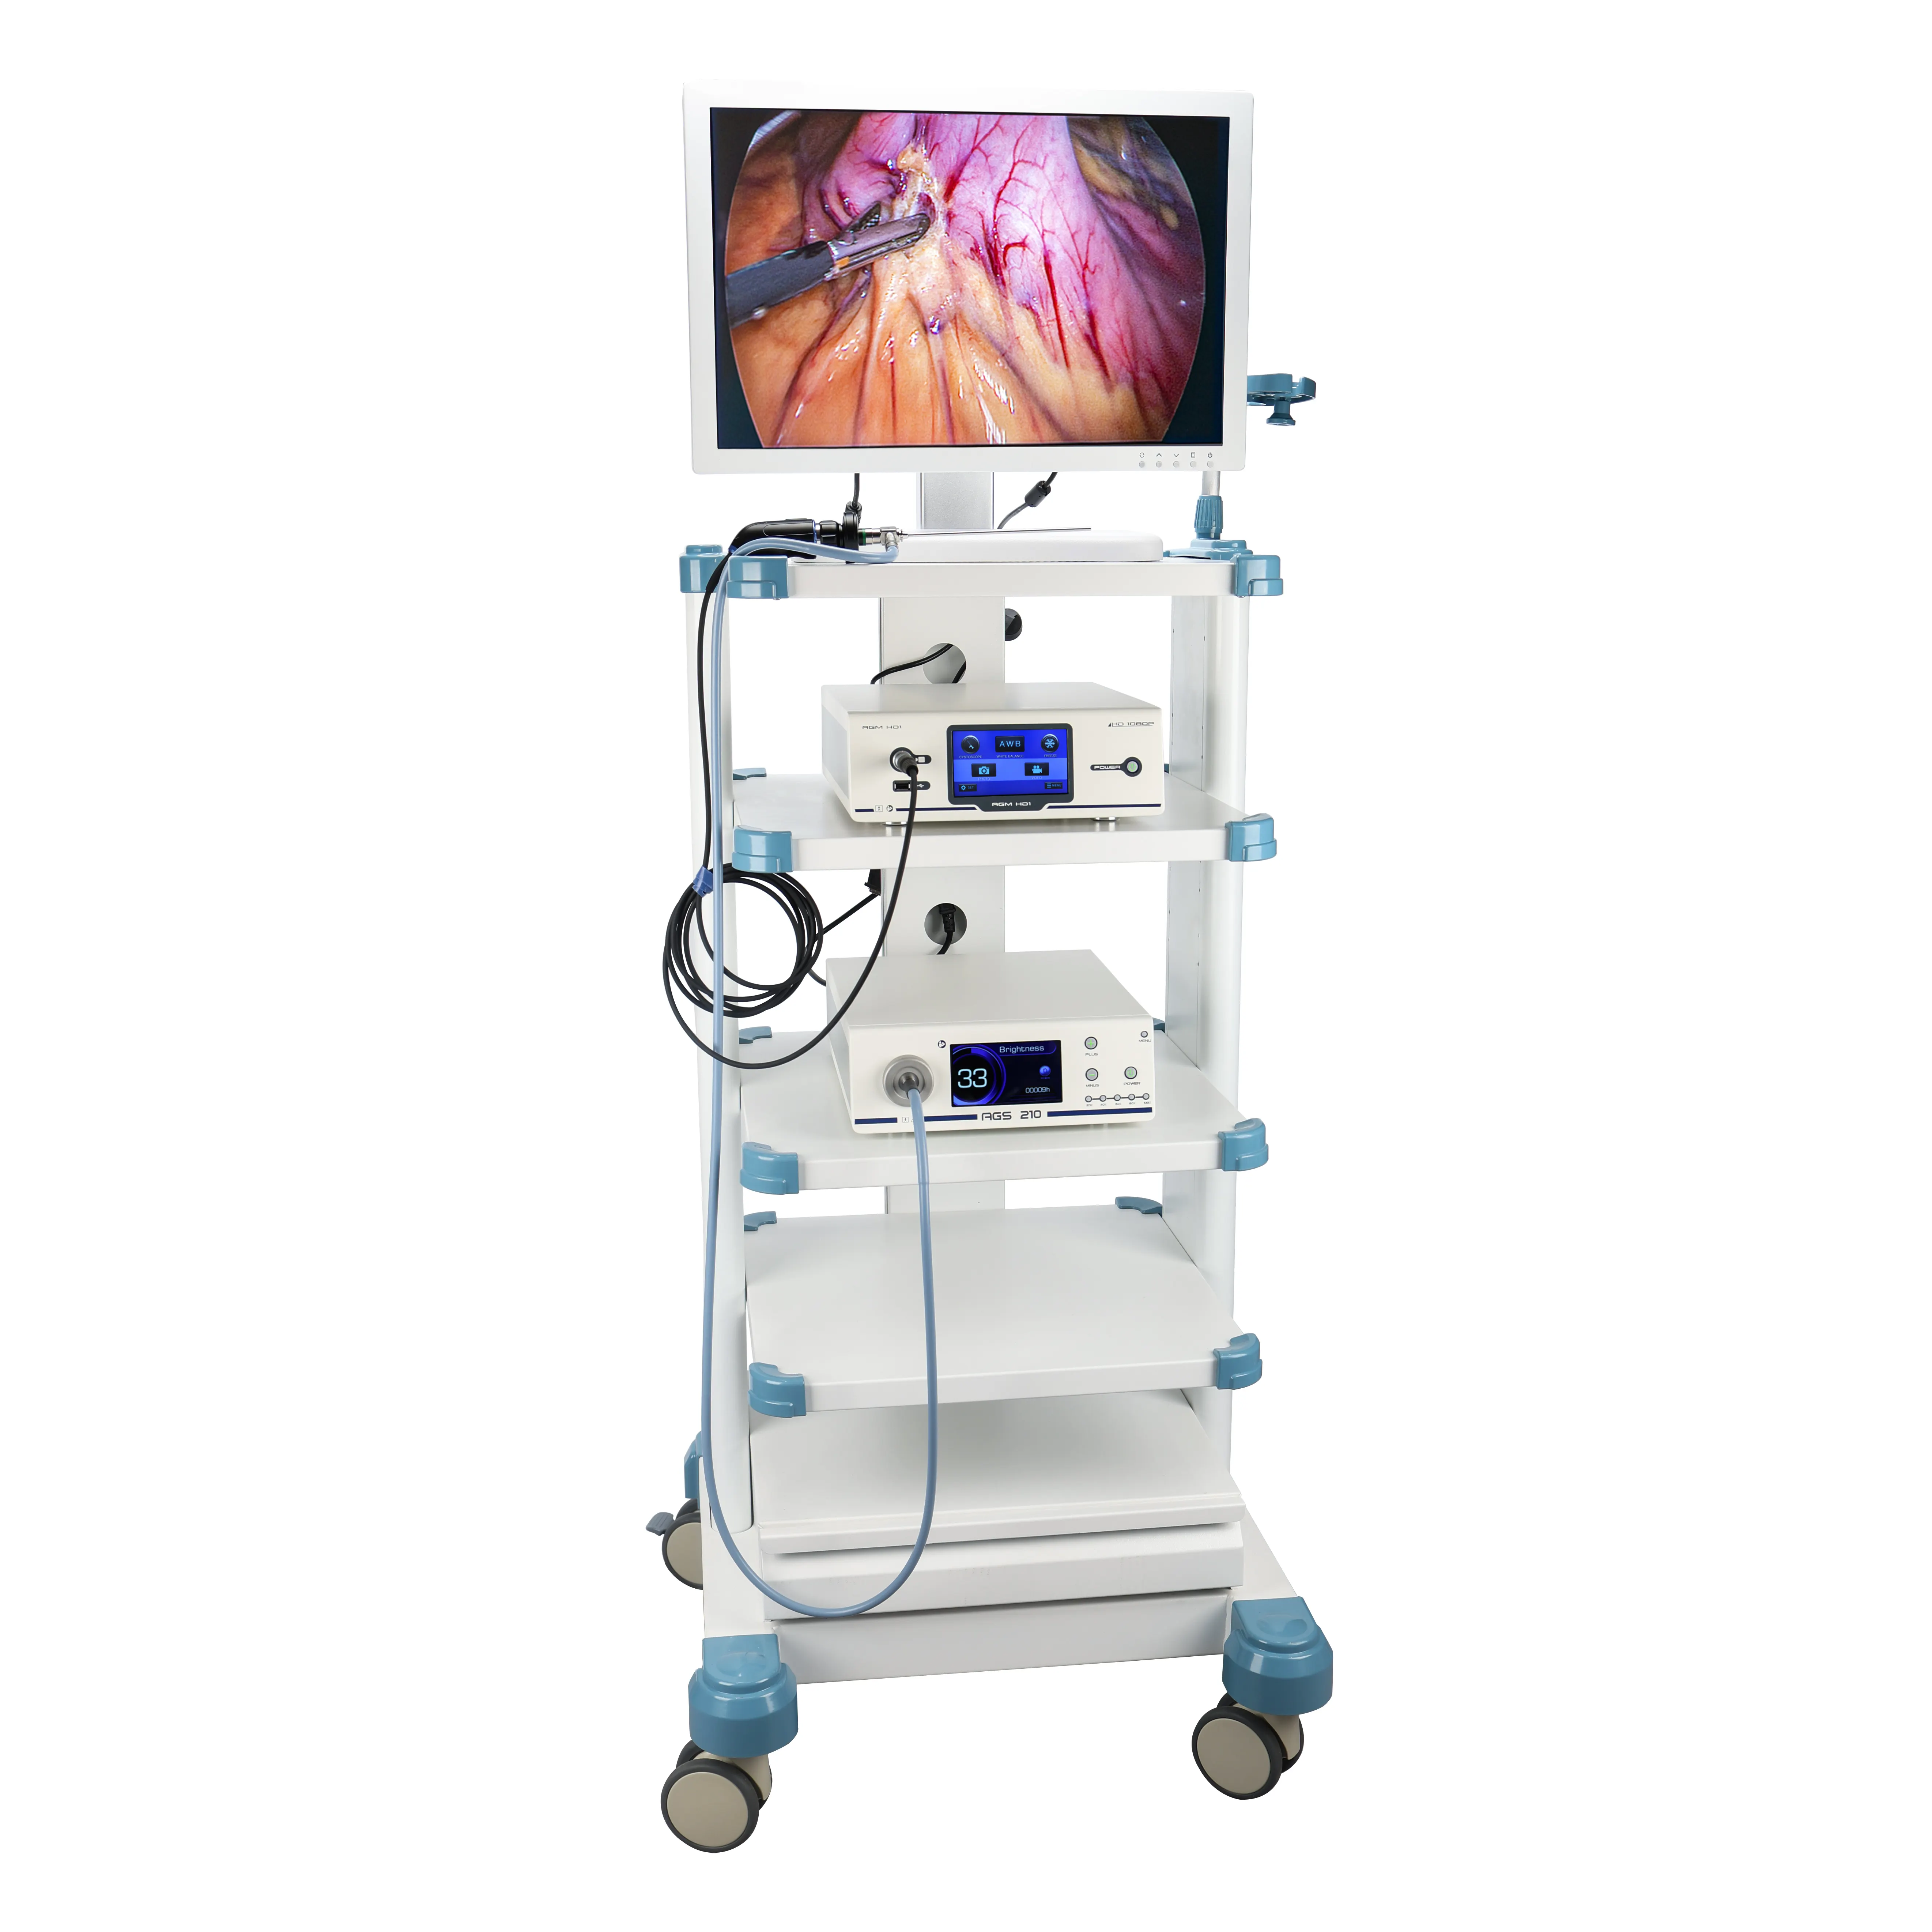 Tour de laparoscopie Full HD à prix d'usine avec instruments et appareils laparoscopiques, système de caméra endoscope